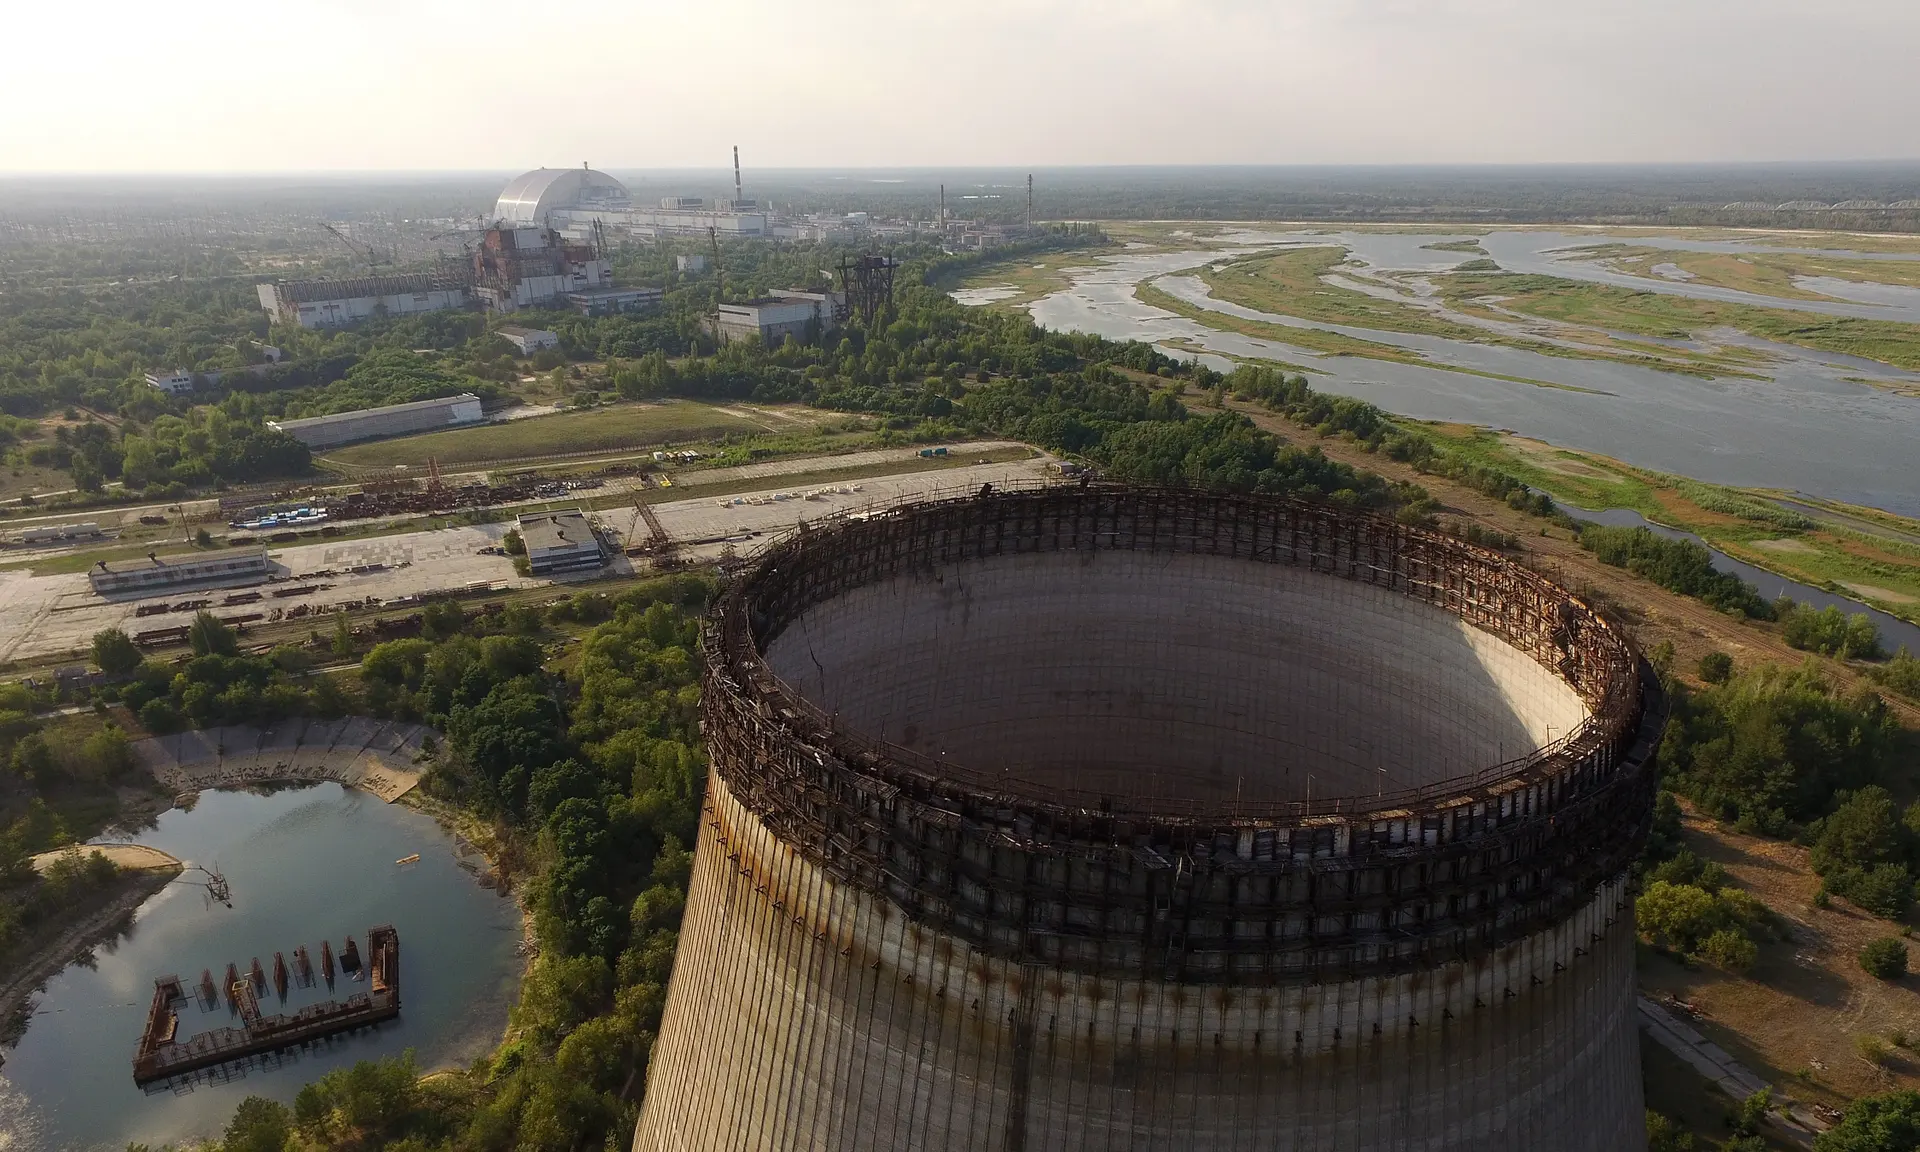 Частично построенная и заброшенная градирня в Чернобыле в качестве защитного ограждения в дали возвышается над повреждённым реактором номер четыре